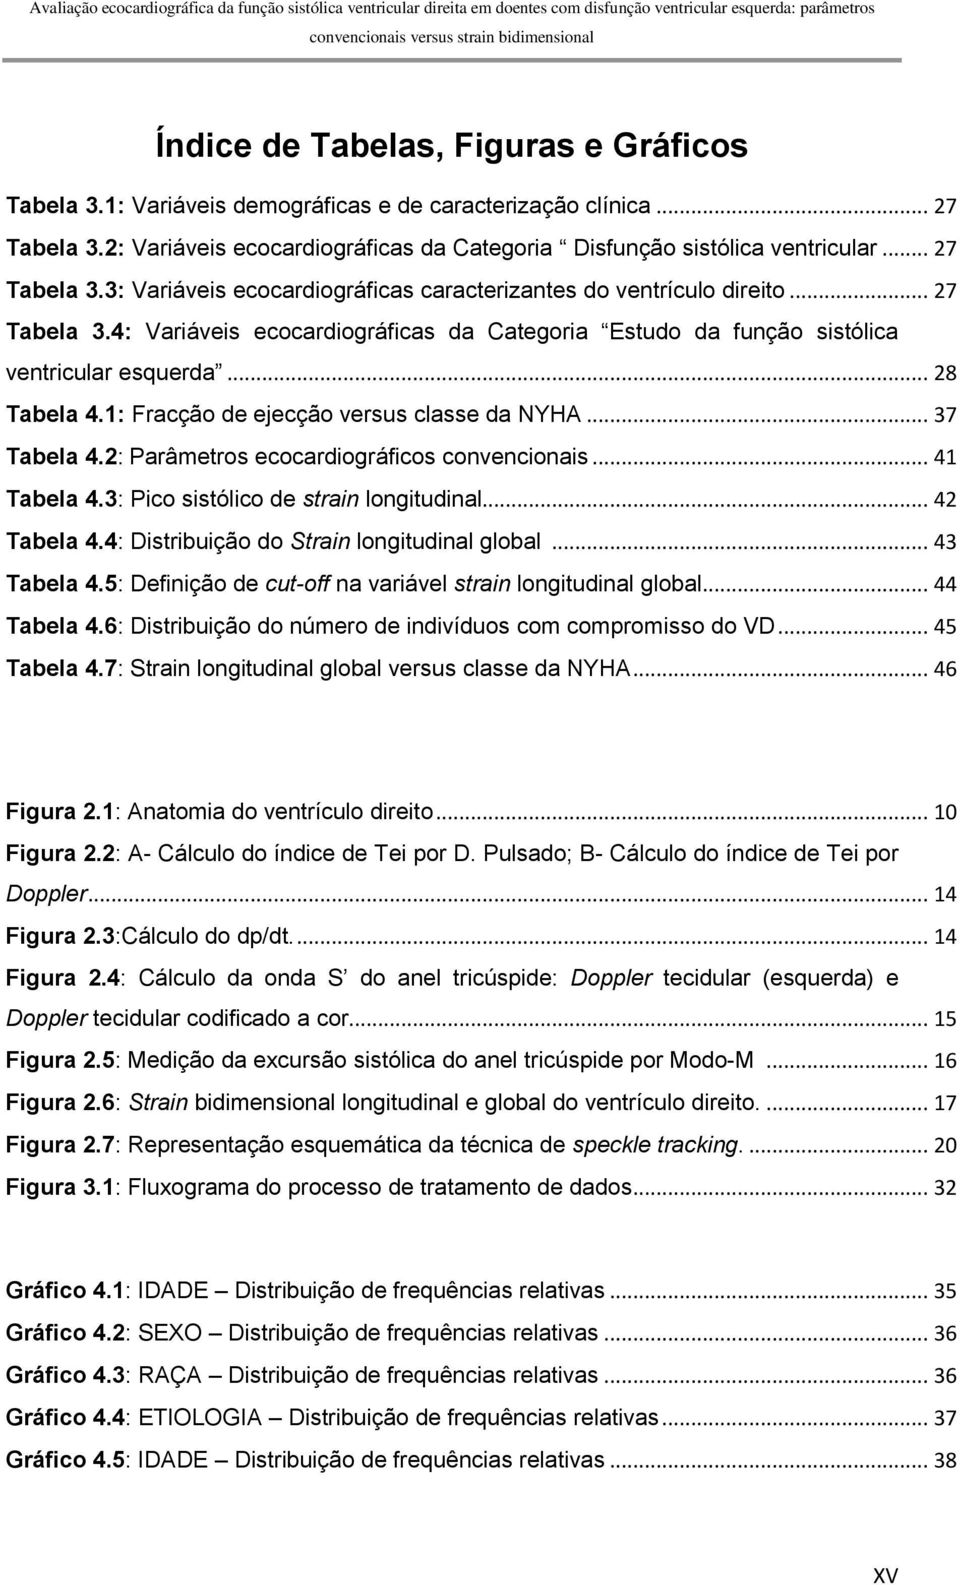 .. 28 Tabela 4.1: Fracção de ejecção versus classe da NYHA... 37 Tabela 4.2: Parâmetros ecocardiográficos convencionais... 41 Tabela 4.3: Pico sistólico de strain longitudinal... 42 Tabela 4.